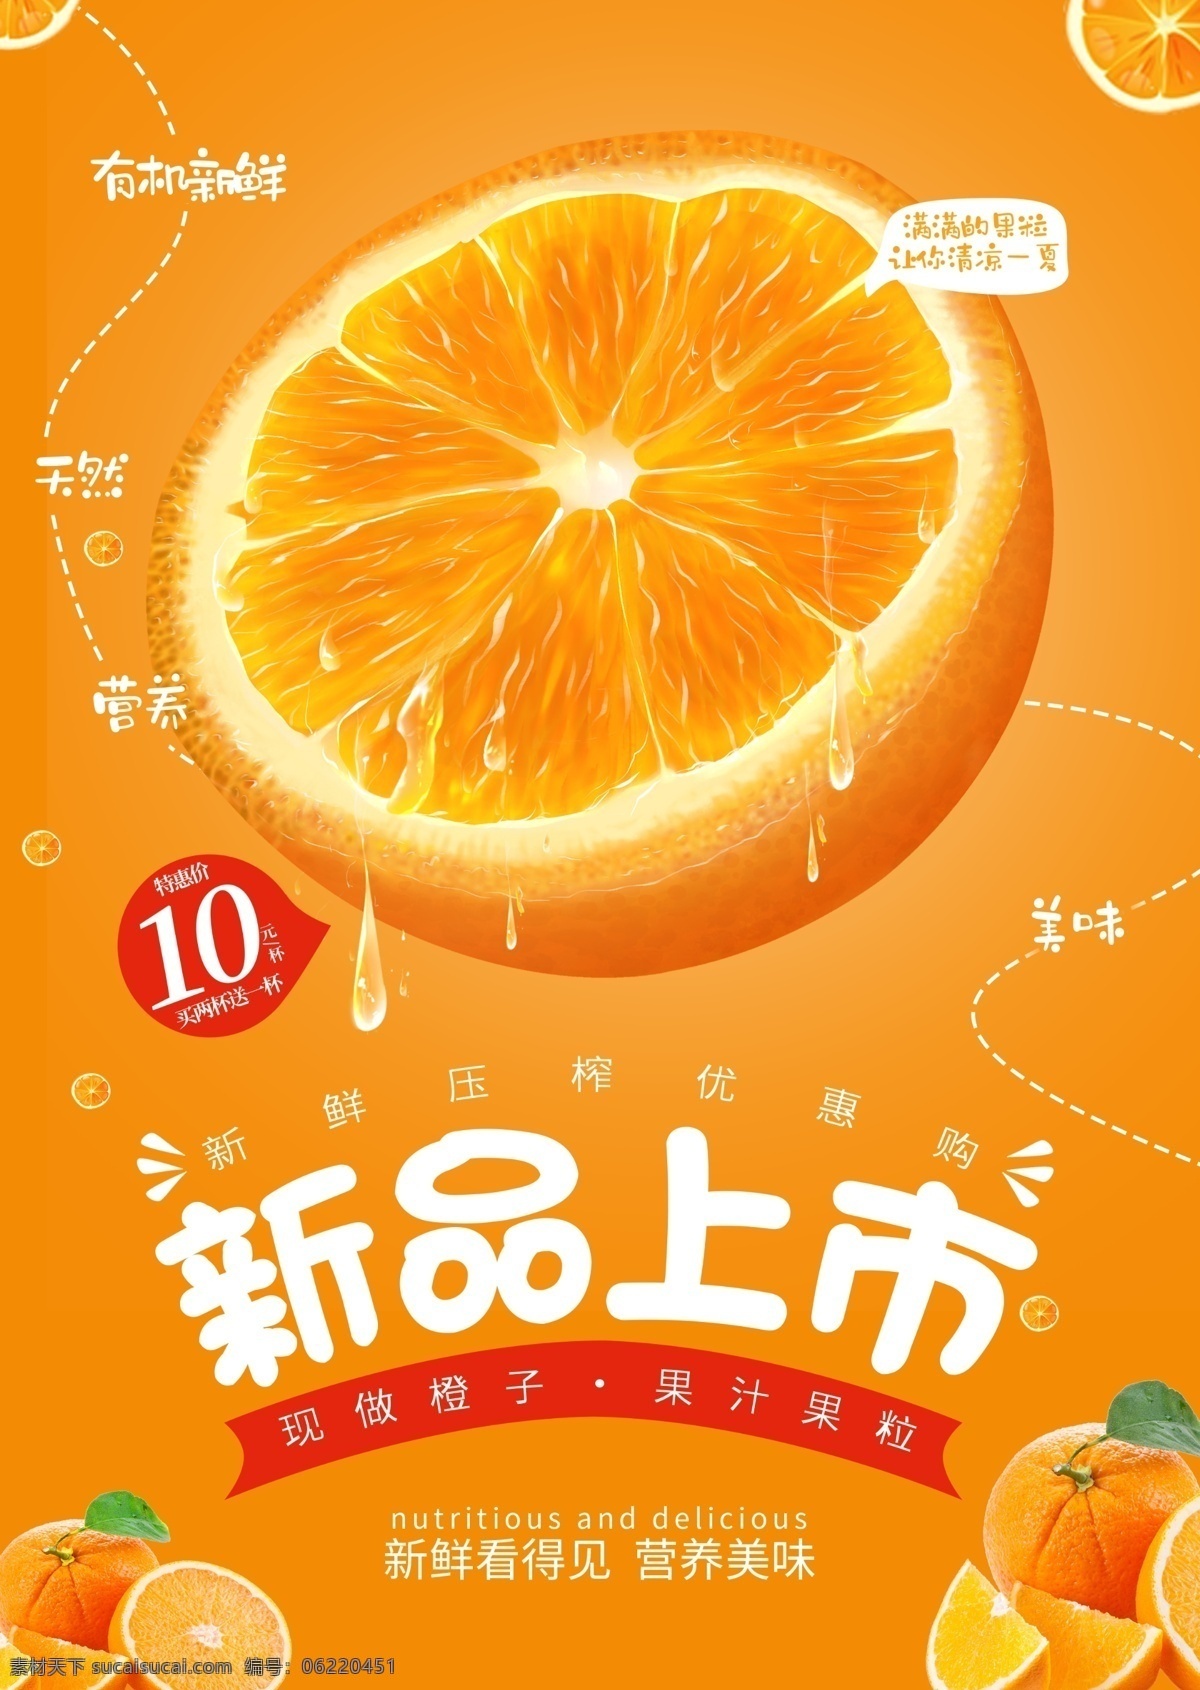 橙子图片 橙子 水果海报 橙子海报 新品上市 水果